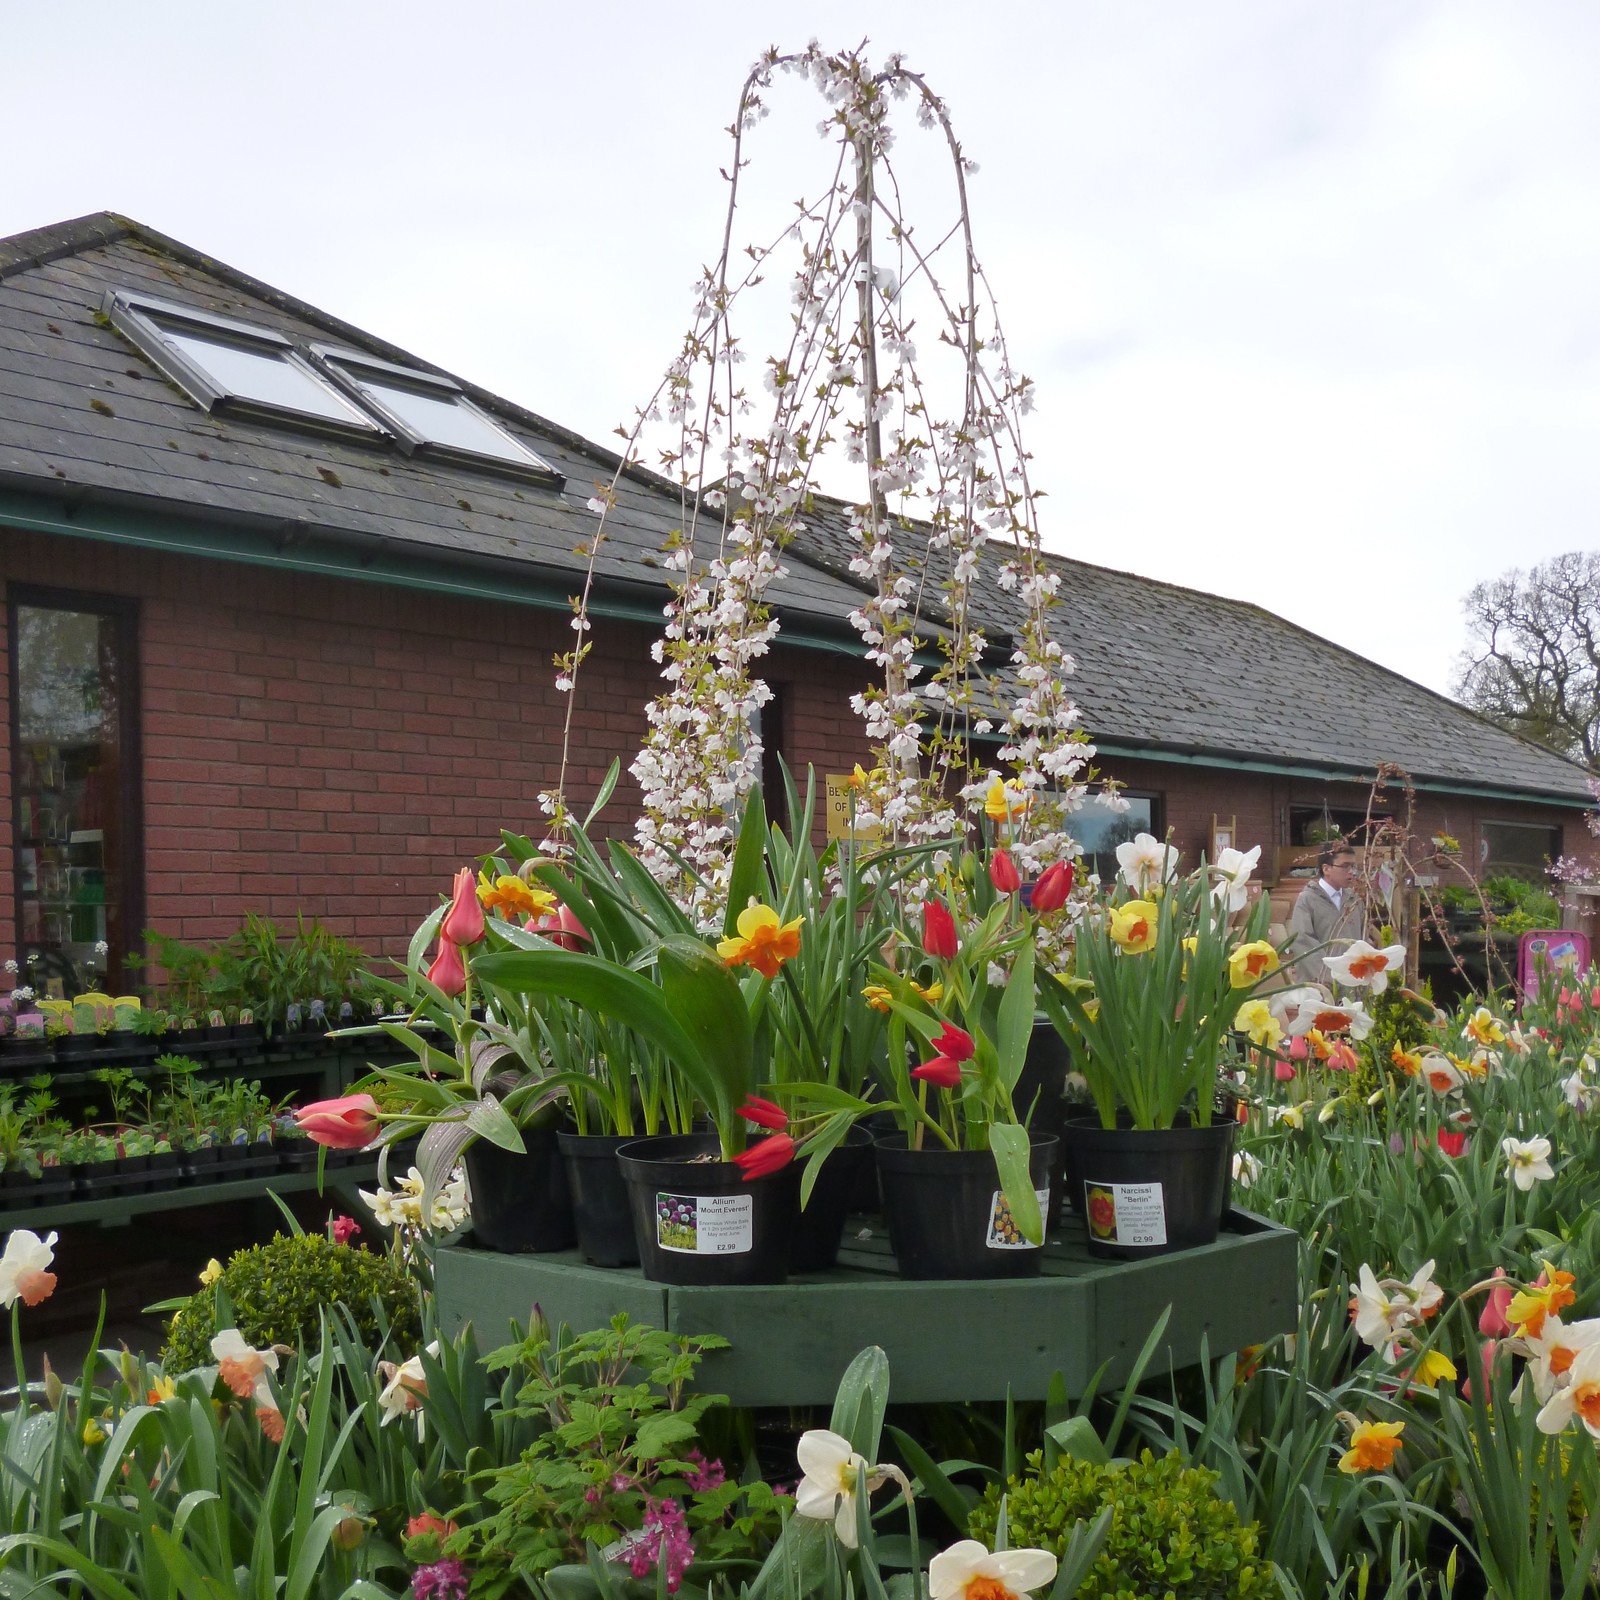 visit the garden centre at derwen college - open daily